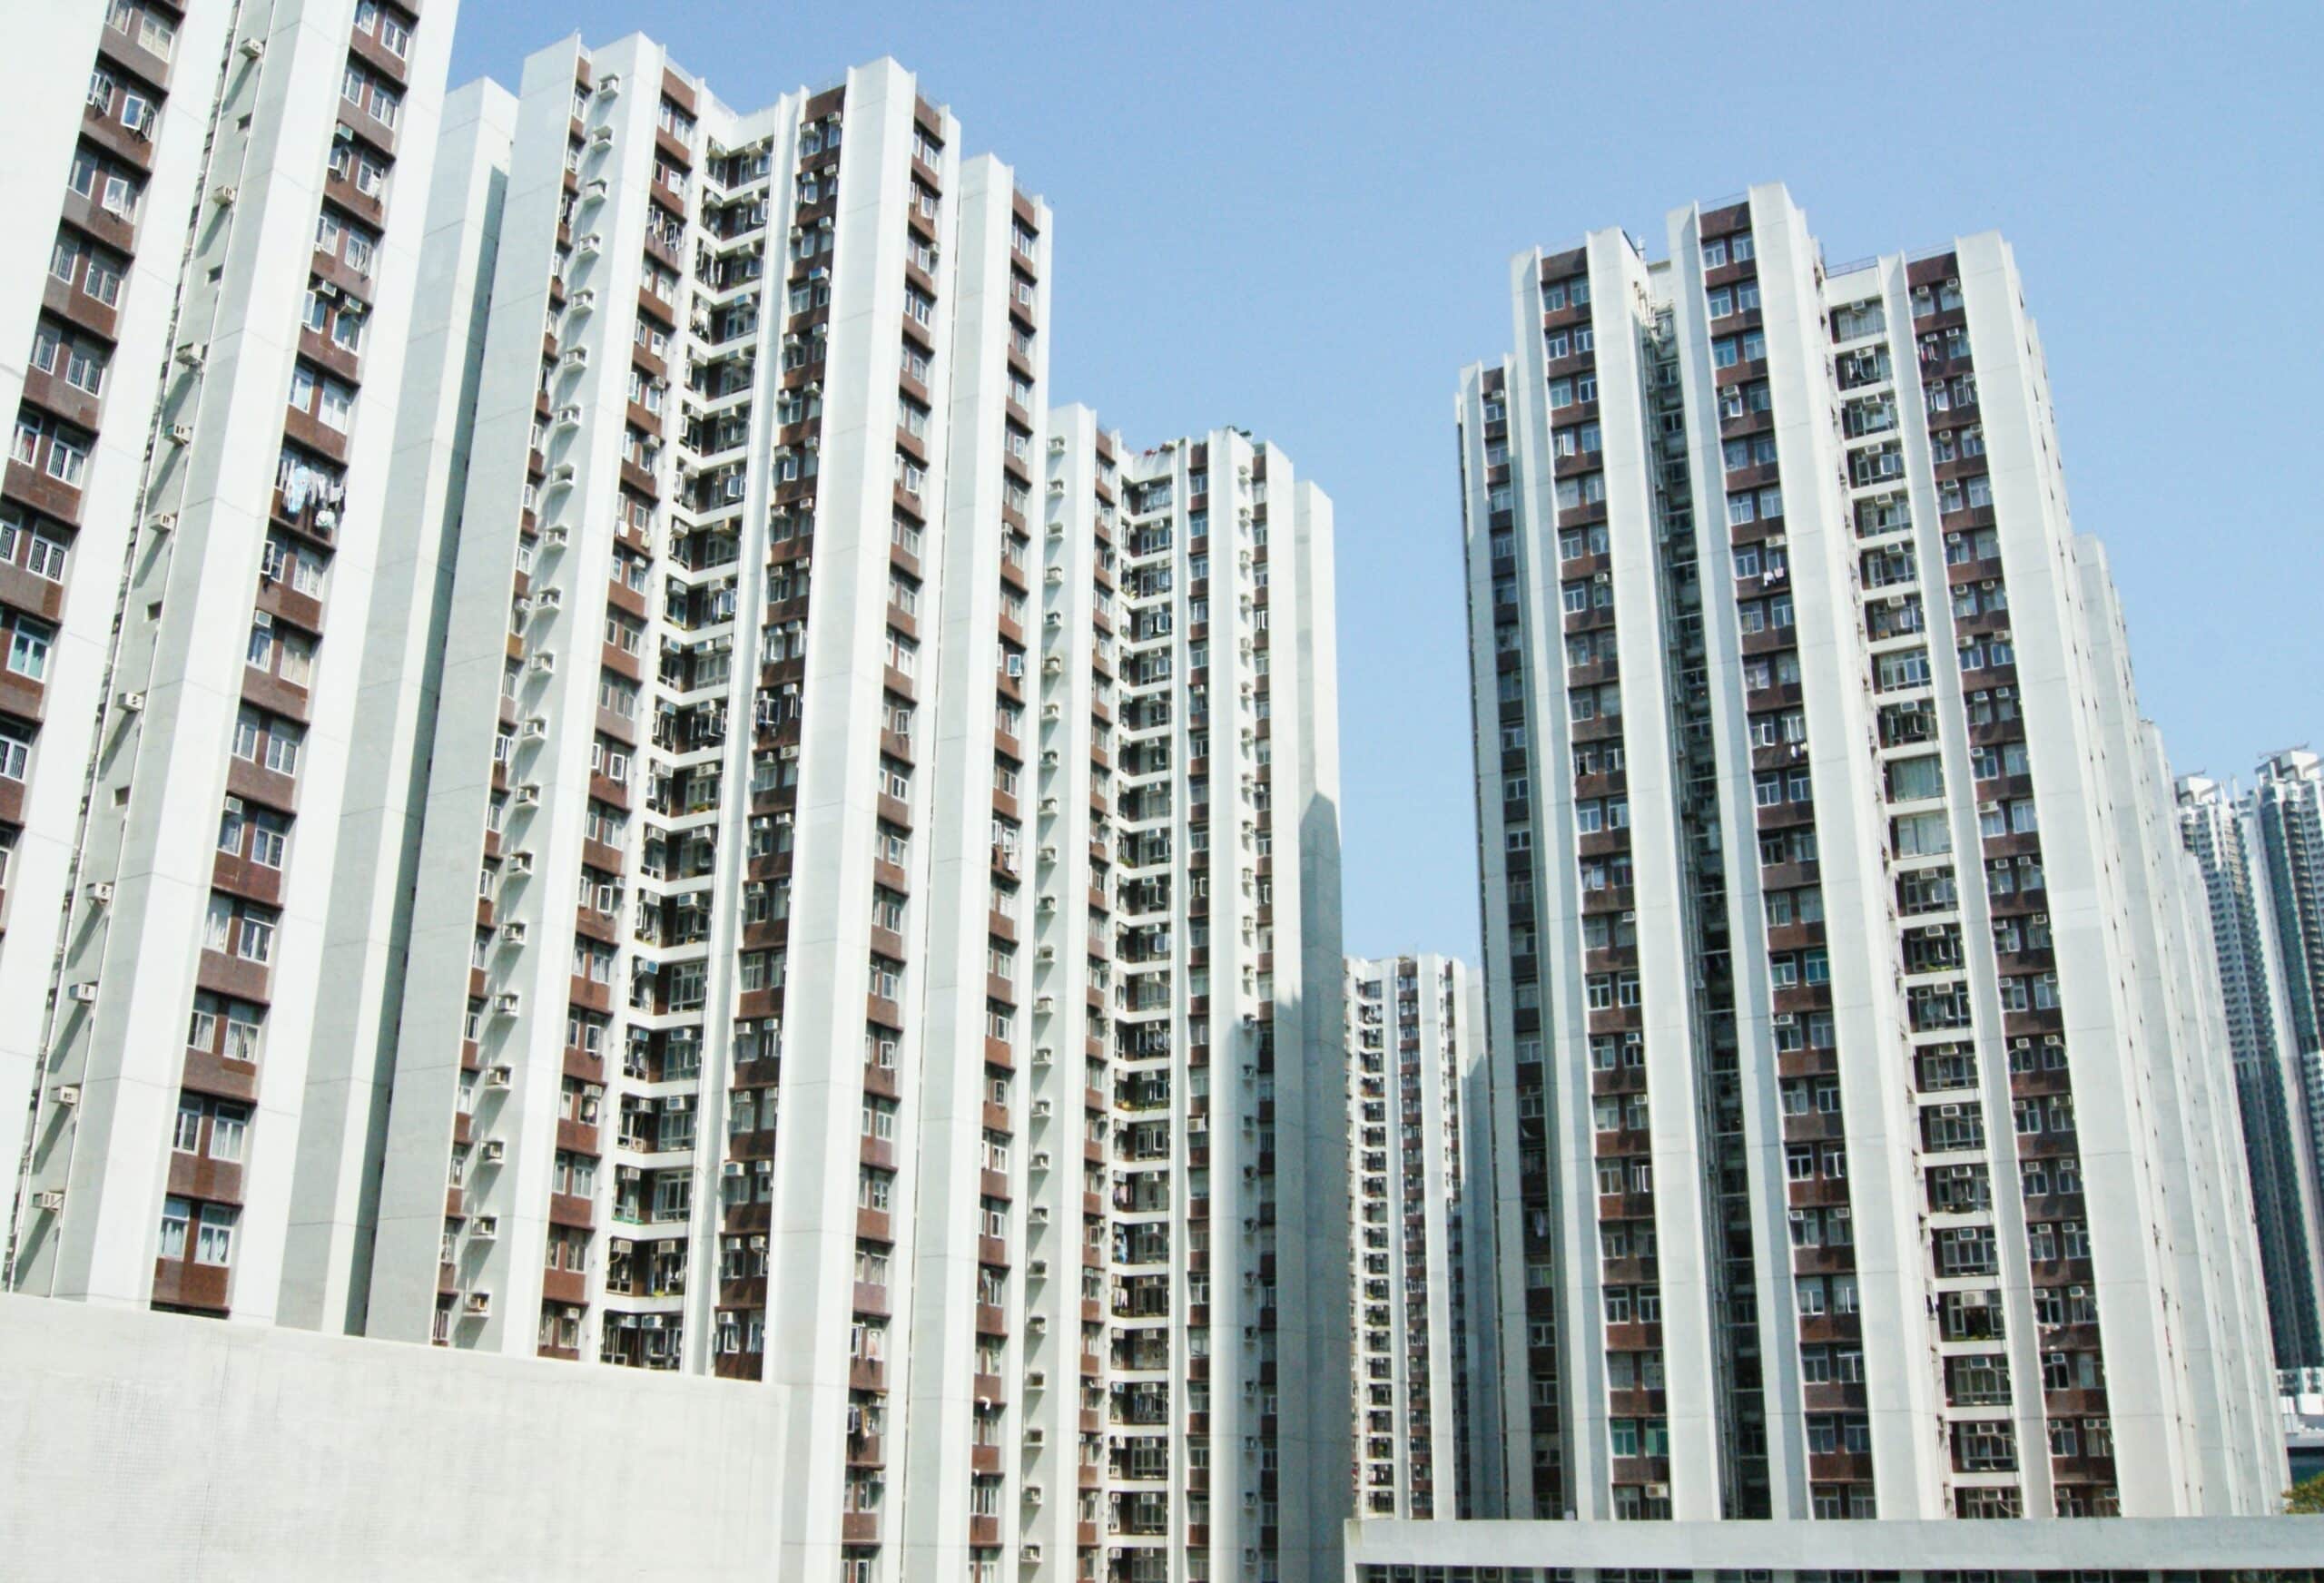 Linee dritte, la ripetizione delle forme: i virali edifici di Hong Kong